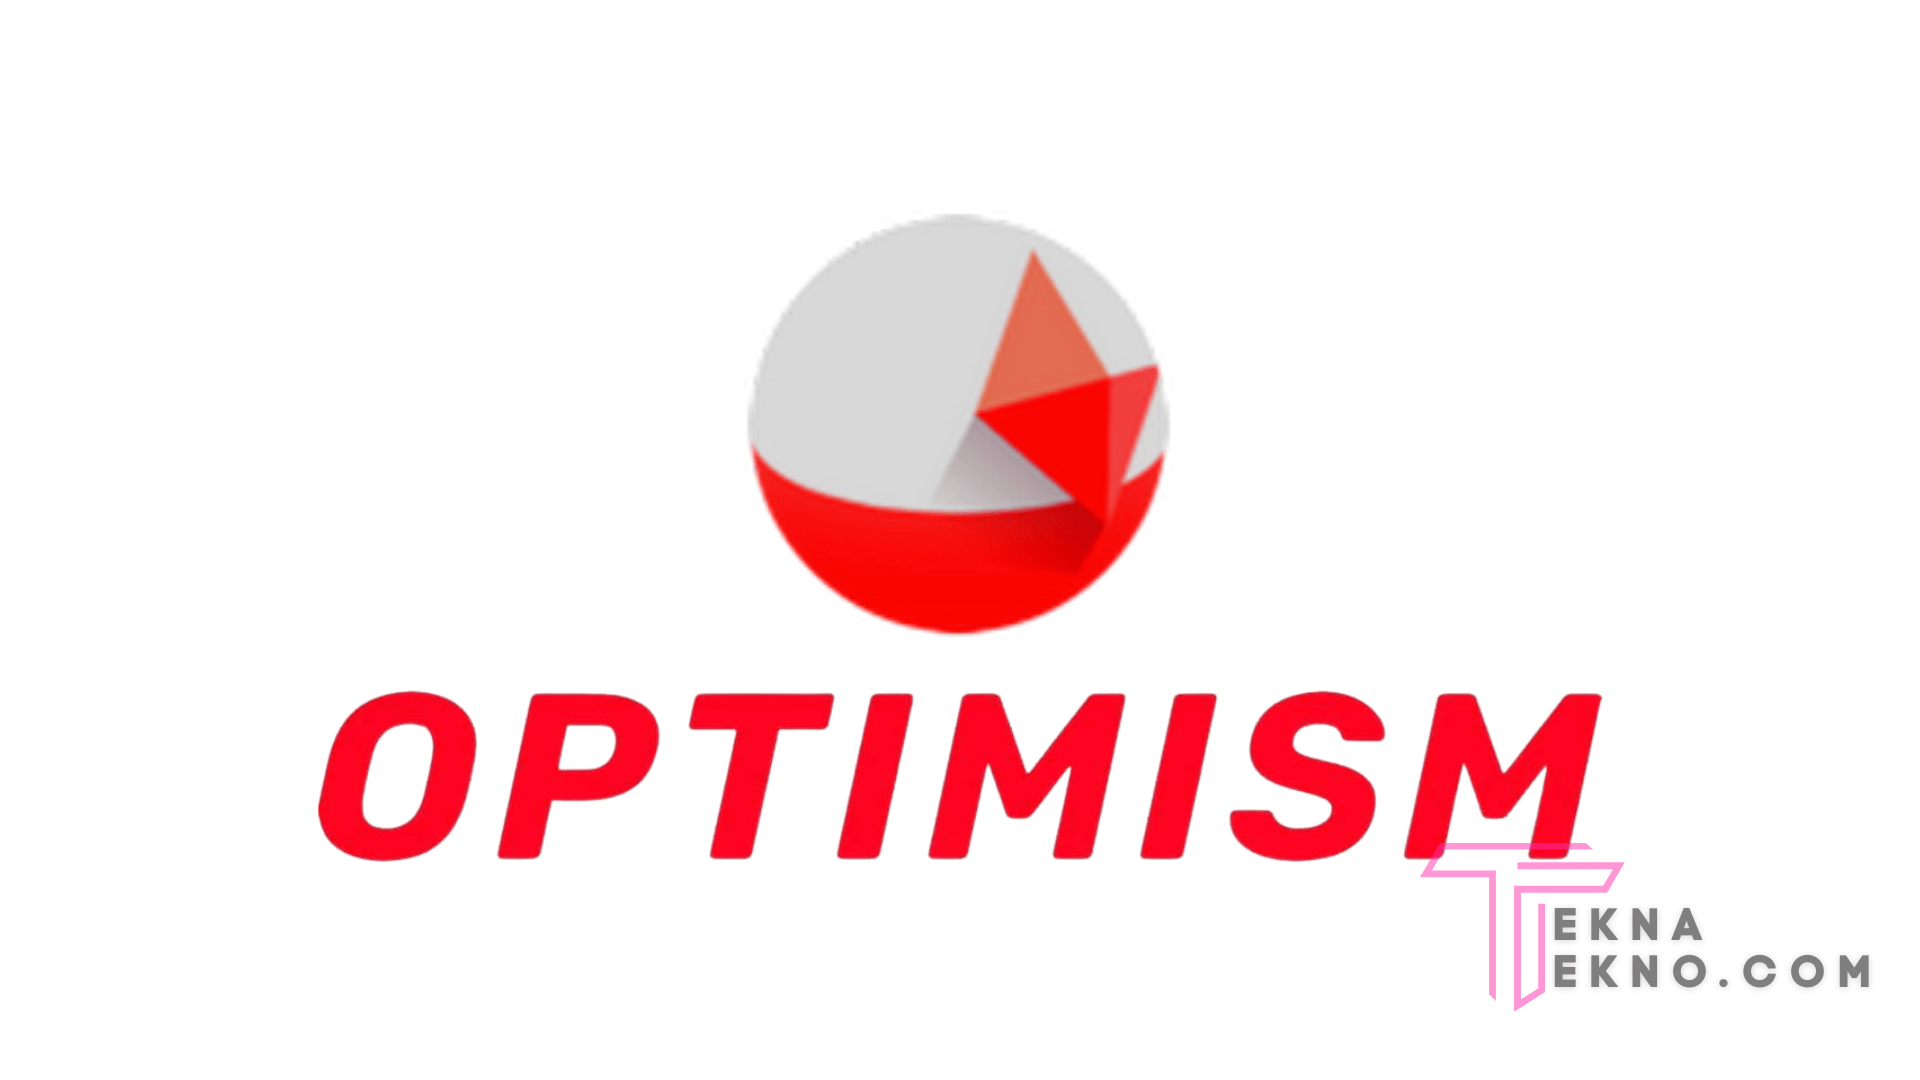 Mengenal Apa itu Optimism (OP)